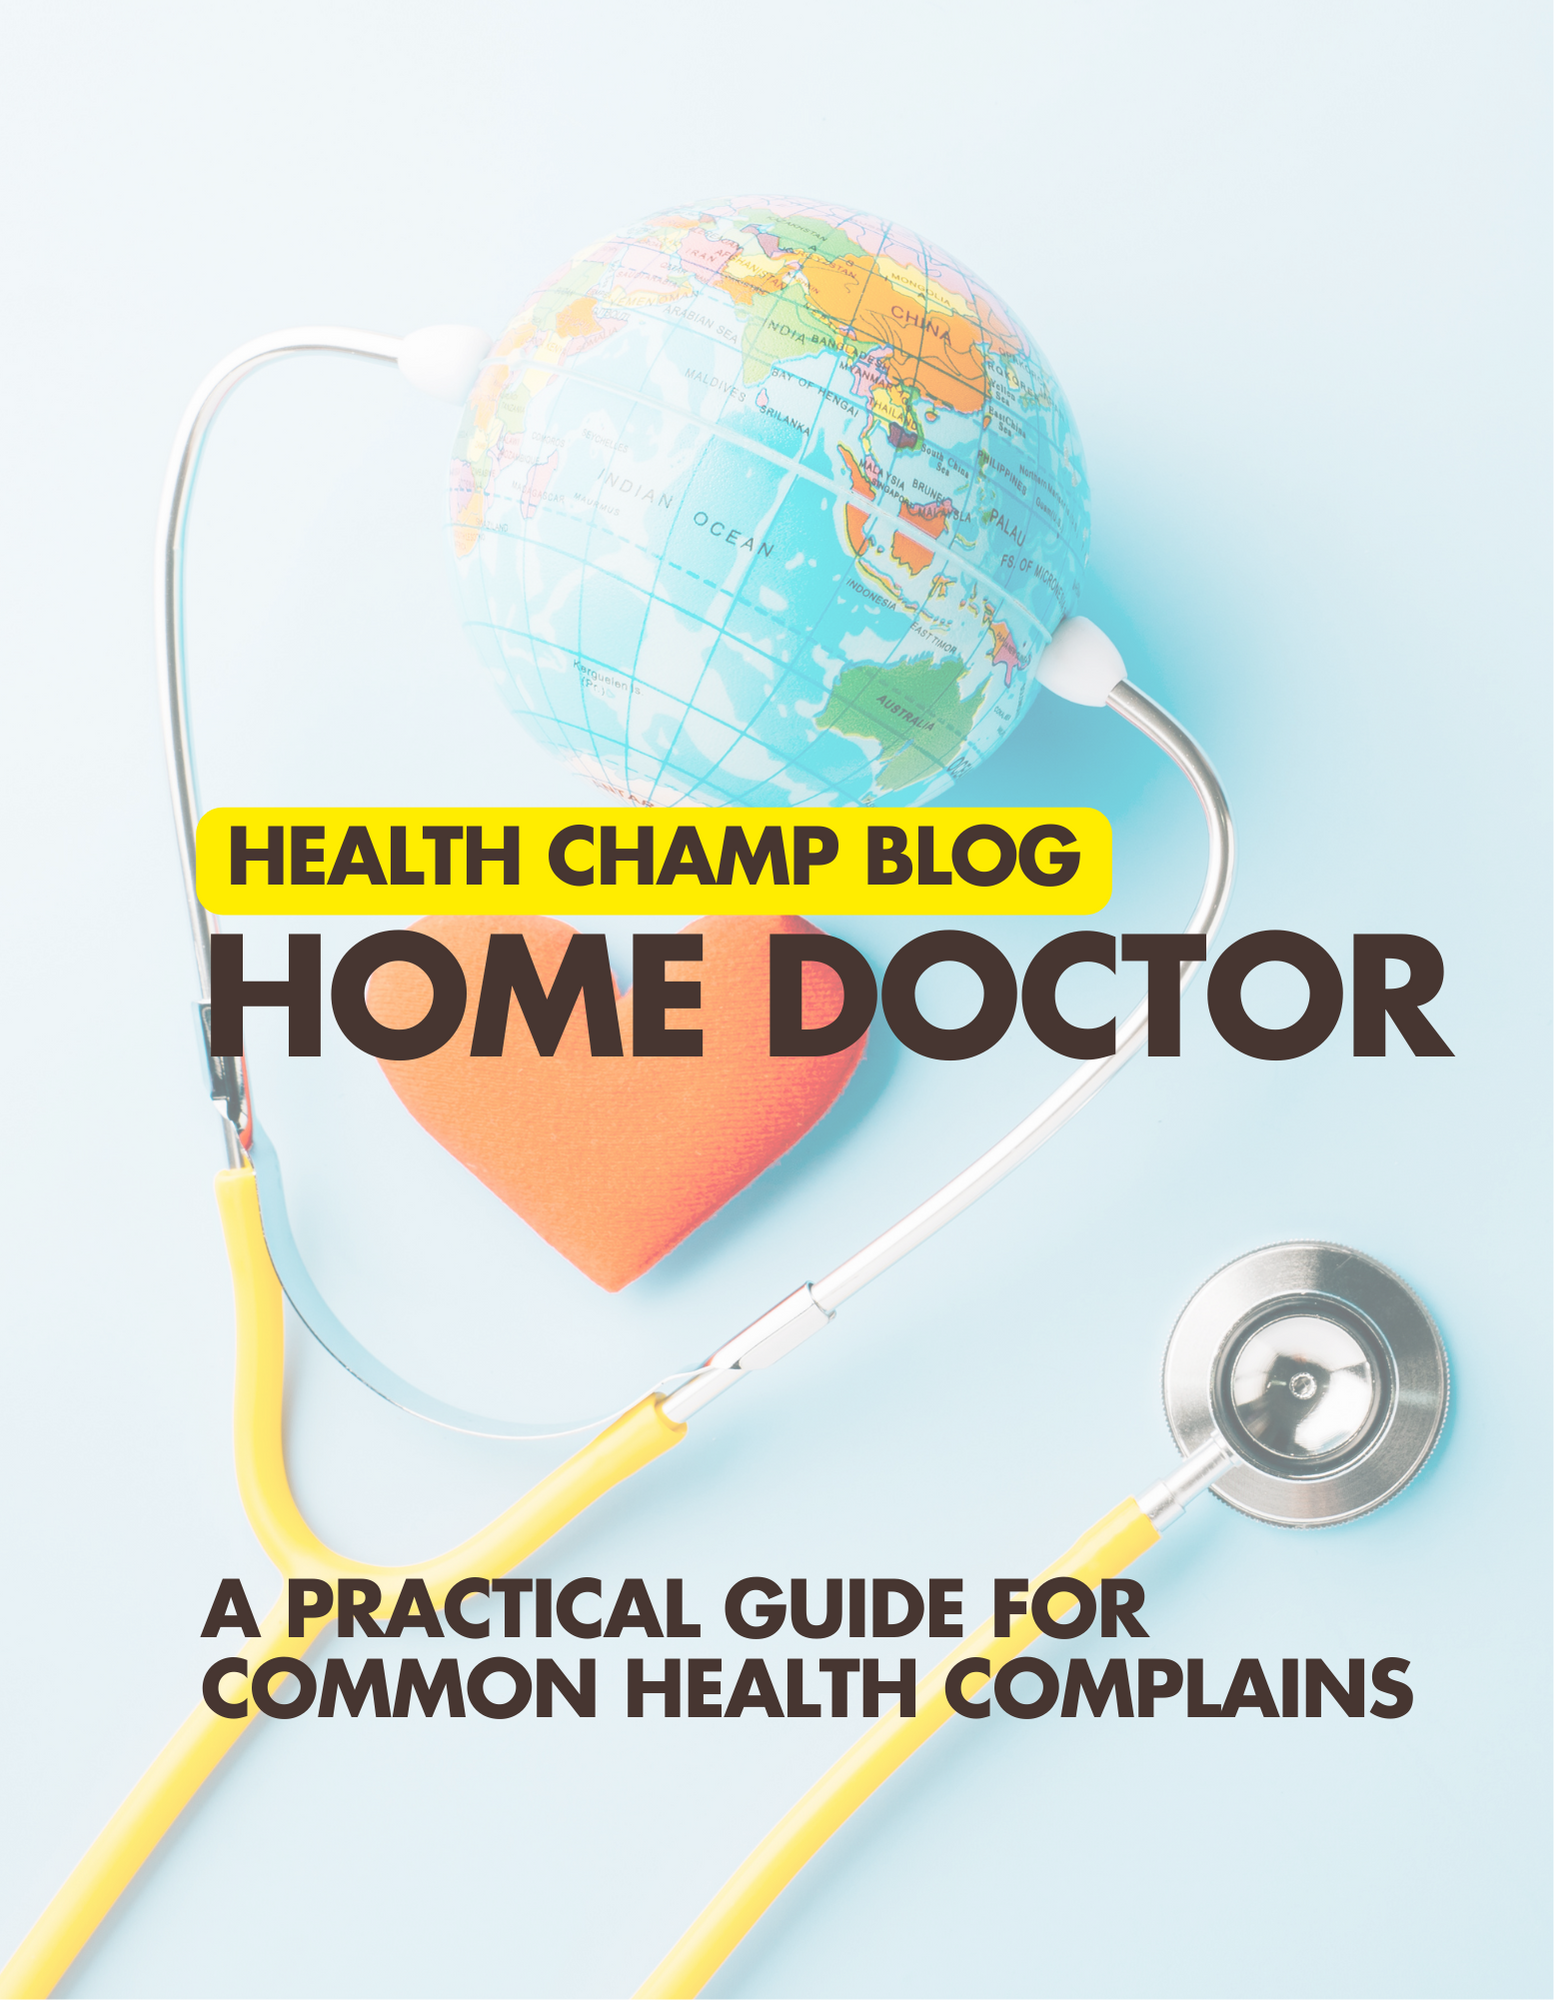 Home Doctor Ebook - HealthChampBlog 